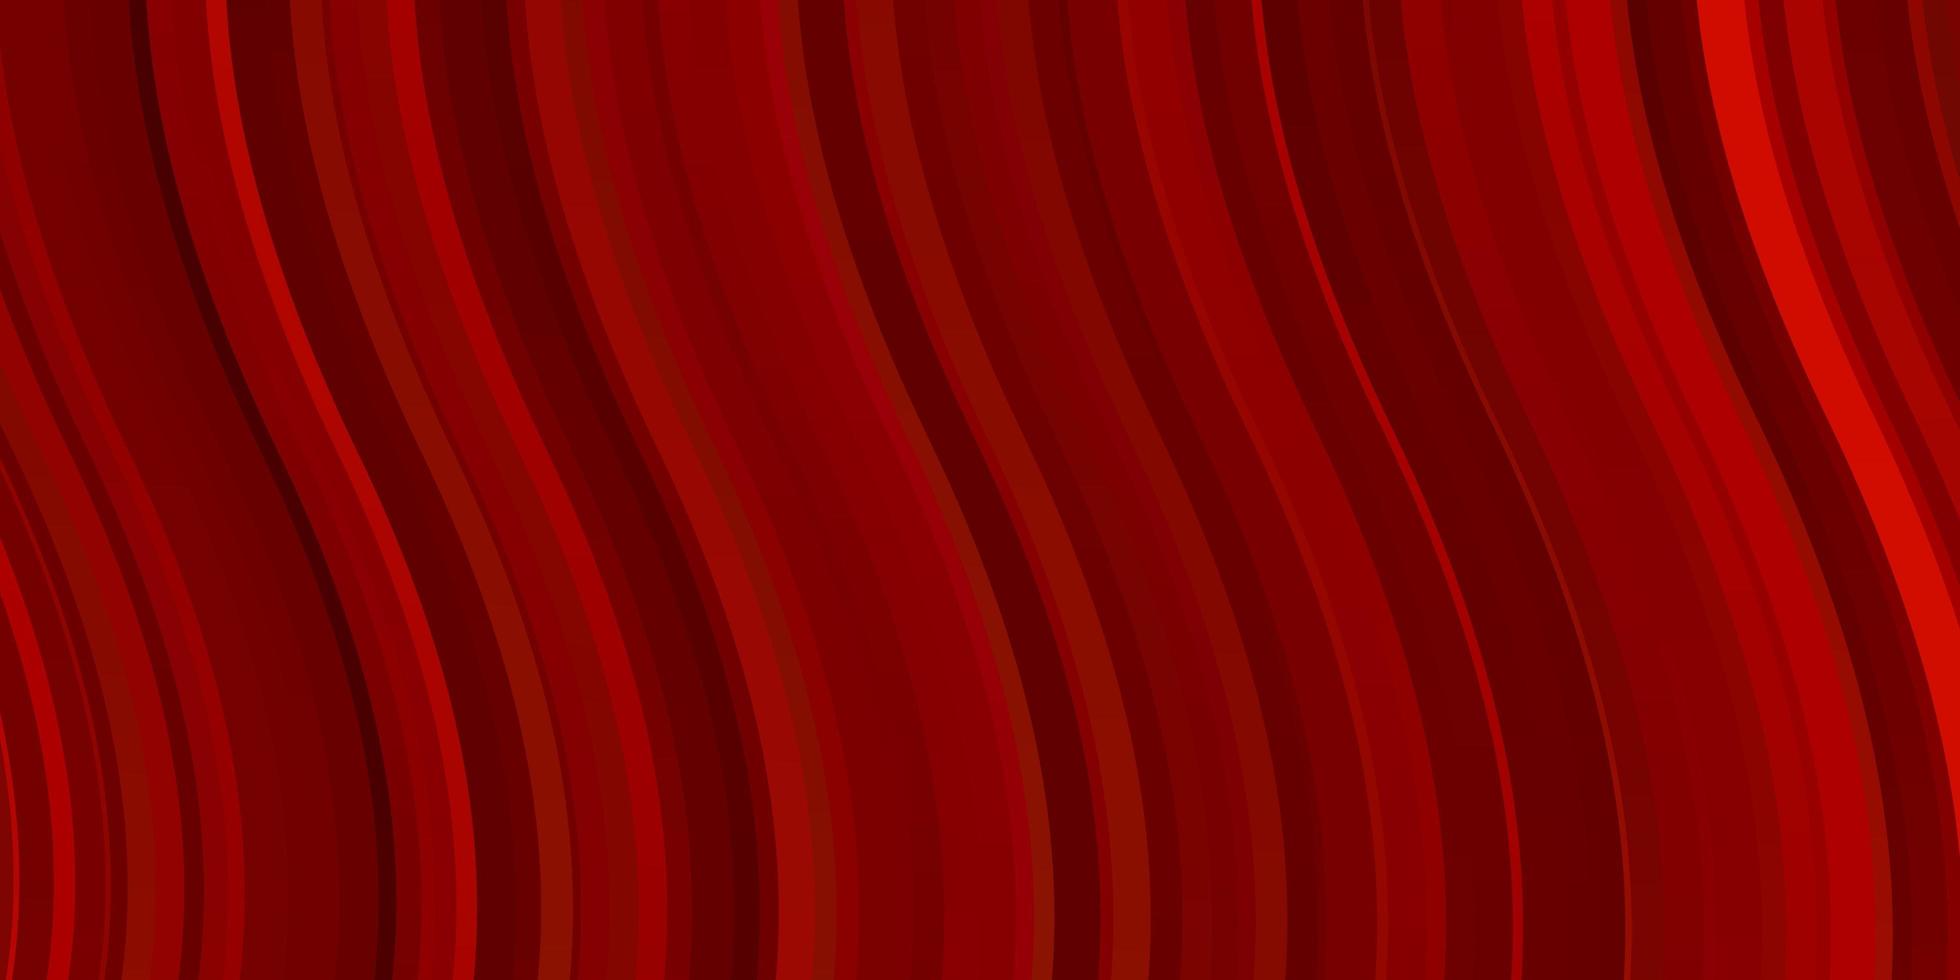 sfondo vettoriale rosso chiaro con curve. campione luminoso con linee piegate colorate, forme. modello per spot pubblicitari, annunci.